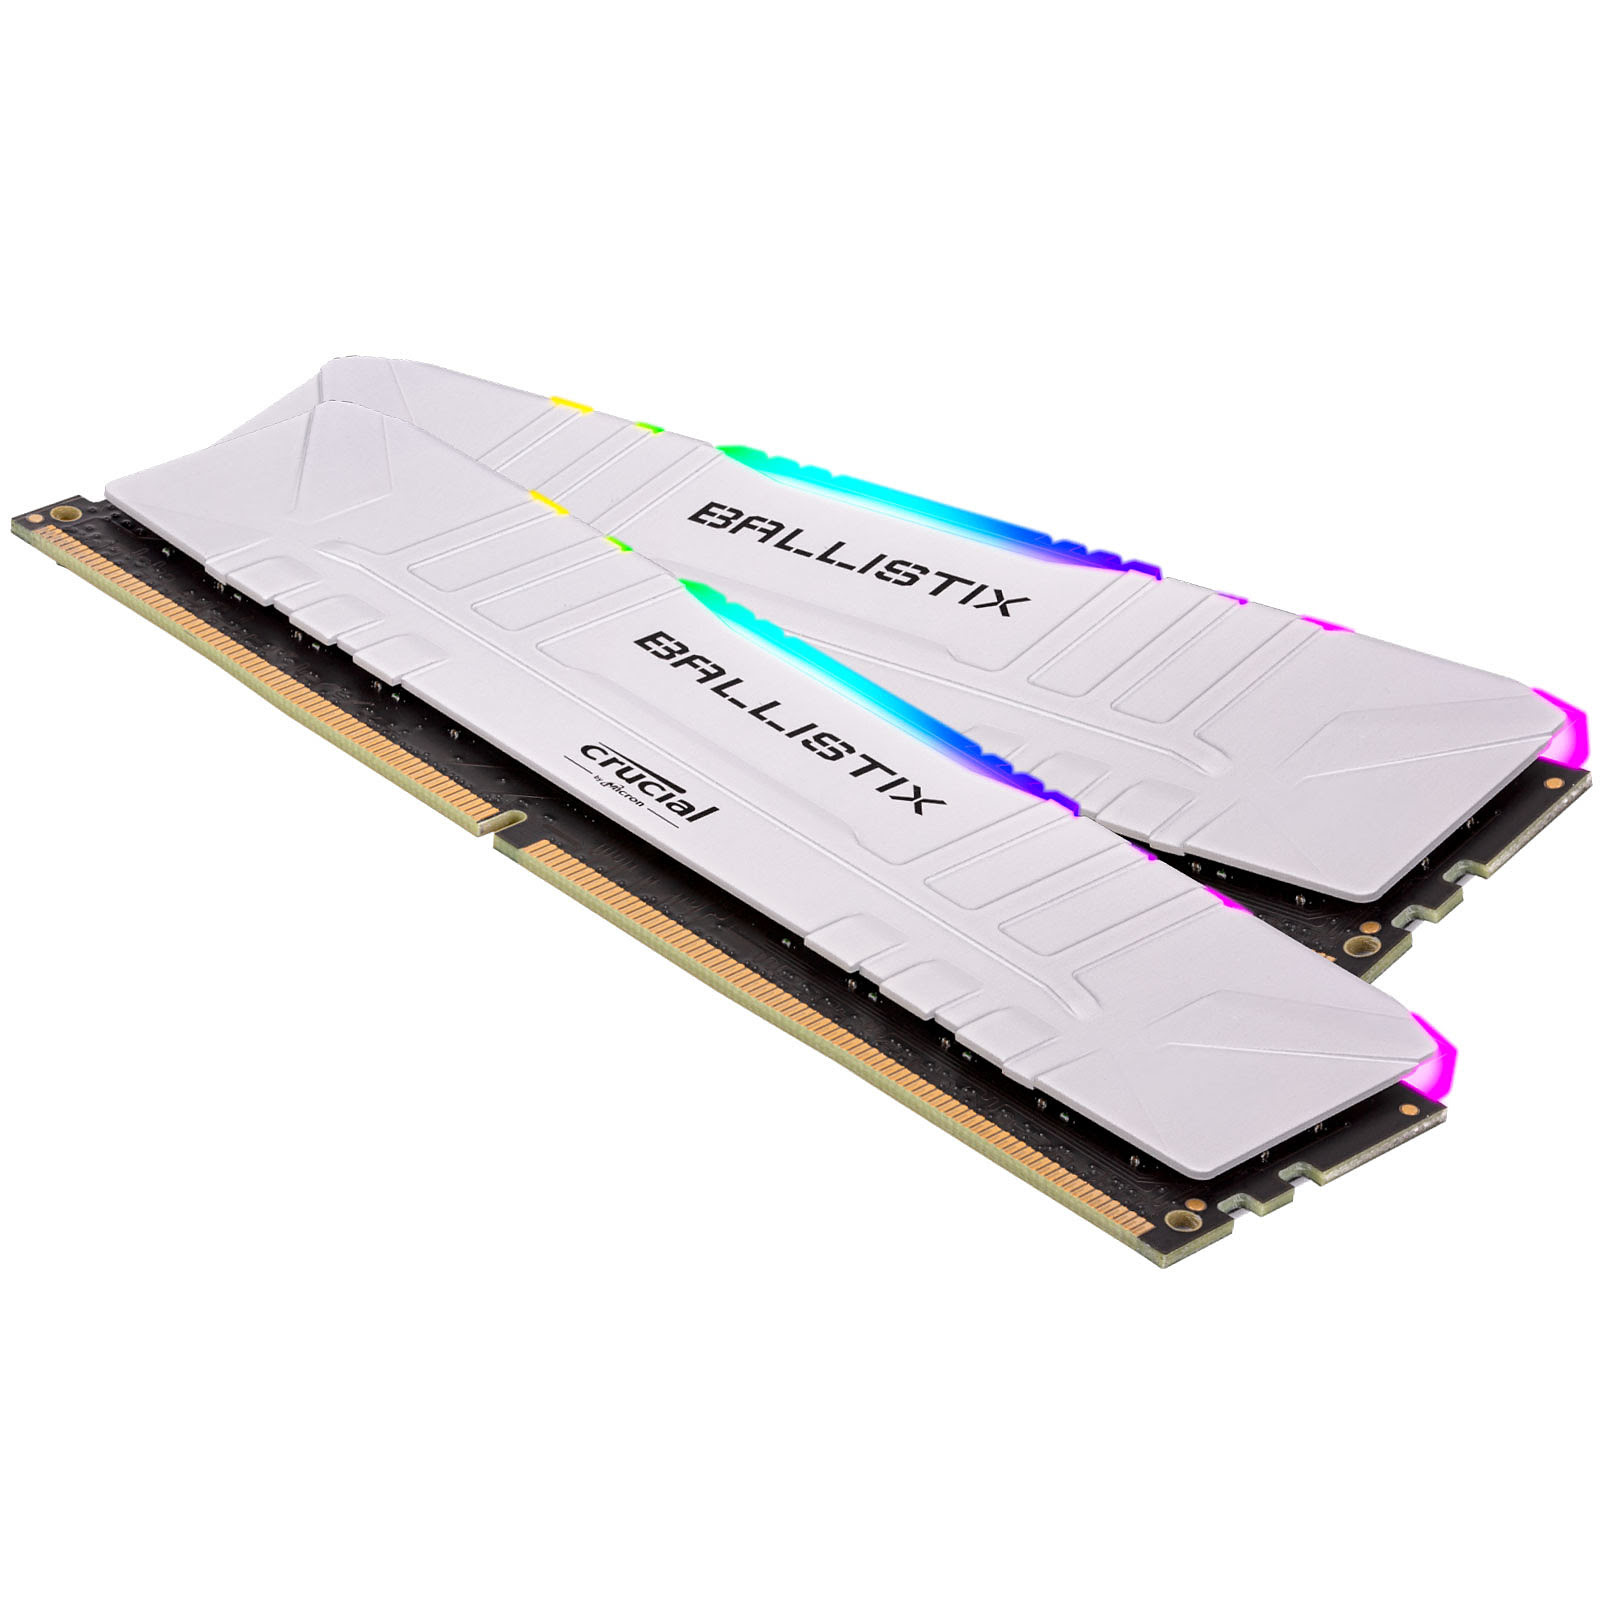 Ballistix RGB 8Go (1x8Go) DDR4 3000MHz - Mémoire PC Ballistix sur grosbill-pro.com - 0